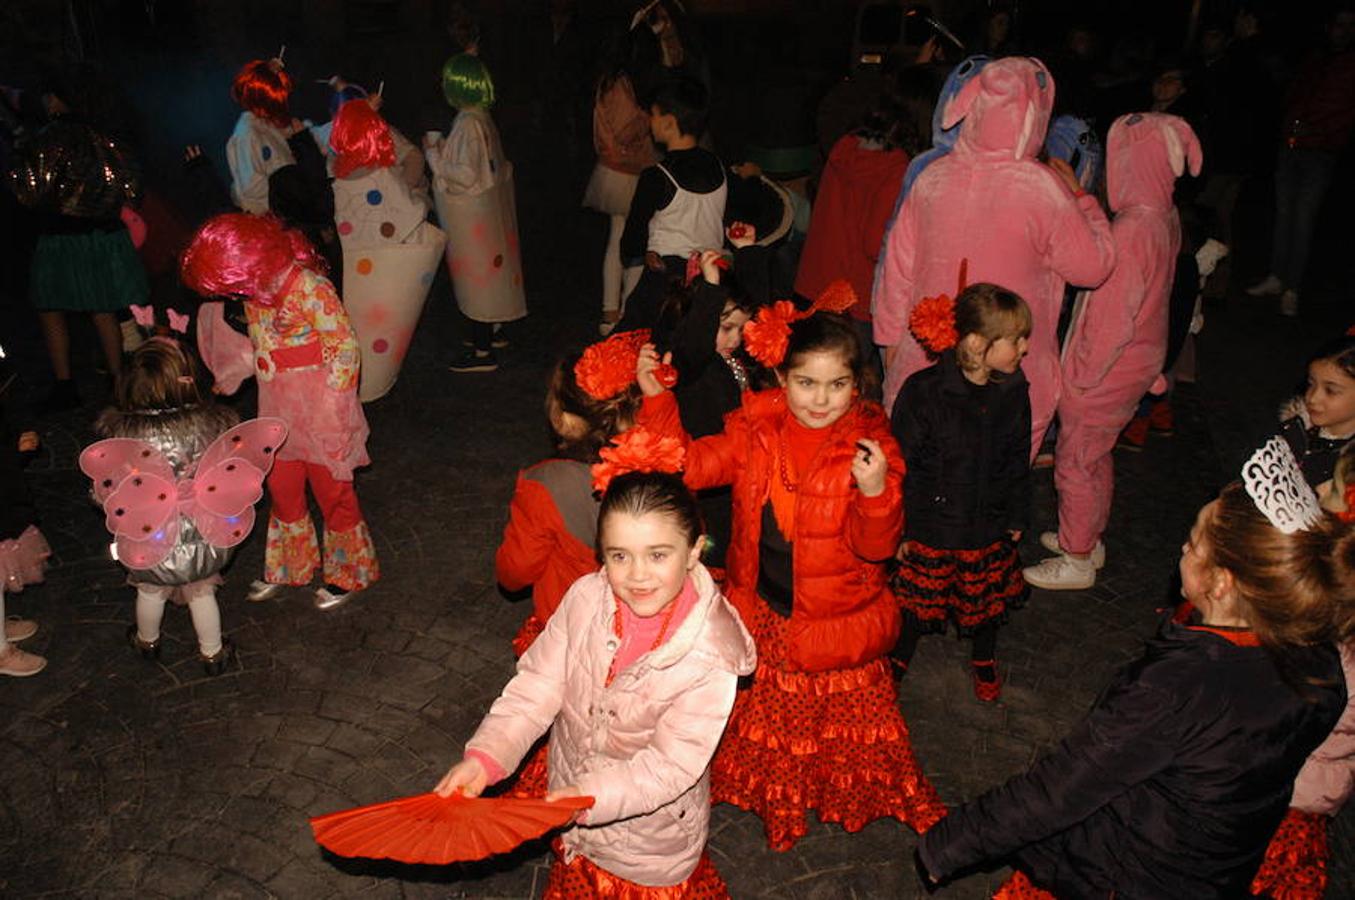 El entorno de las localidades del Alhama-Linares ha celebrado su tradicional desfile de carnaval. Gran ambiente de fiesta en Rincón de Olivedo donde año a año se superan con los disfraces.